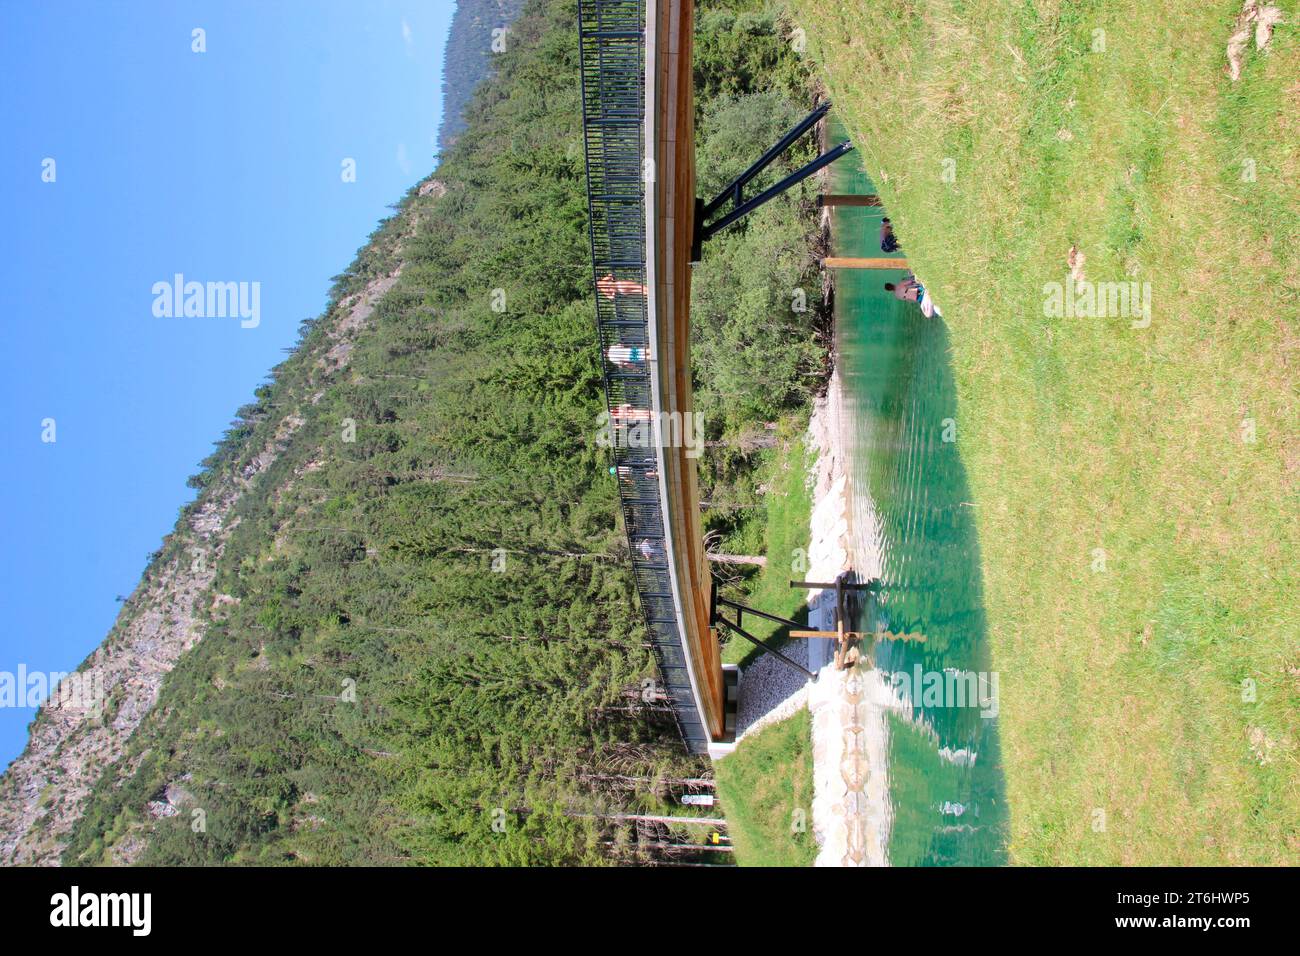 Neu erbaute Kanalbrücke zur Brücke der Wasserverbindung zwischen Plansee und Heiterwanger See, Heiterwang, Tirol, Österreich. Stockfoto